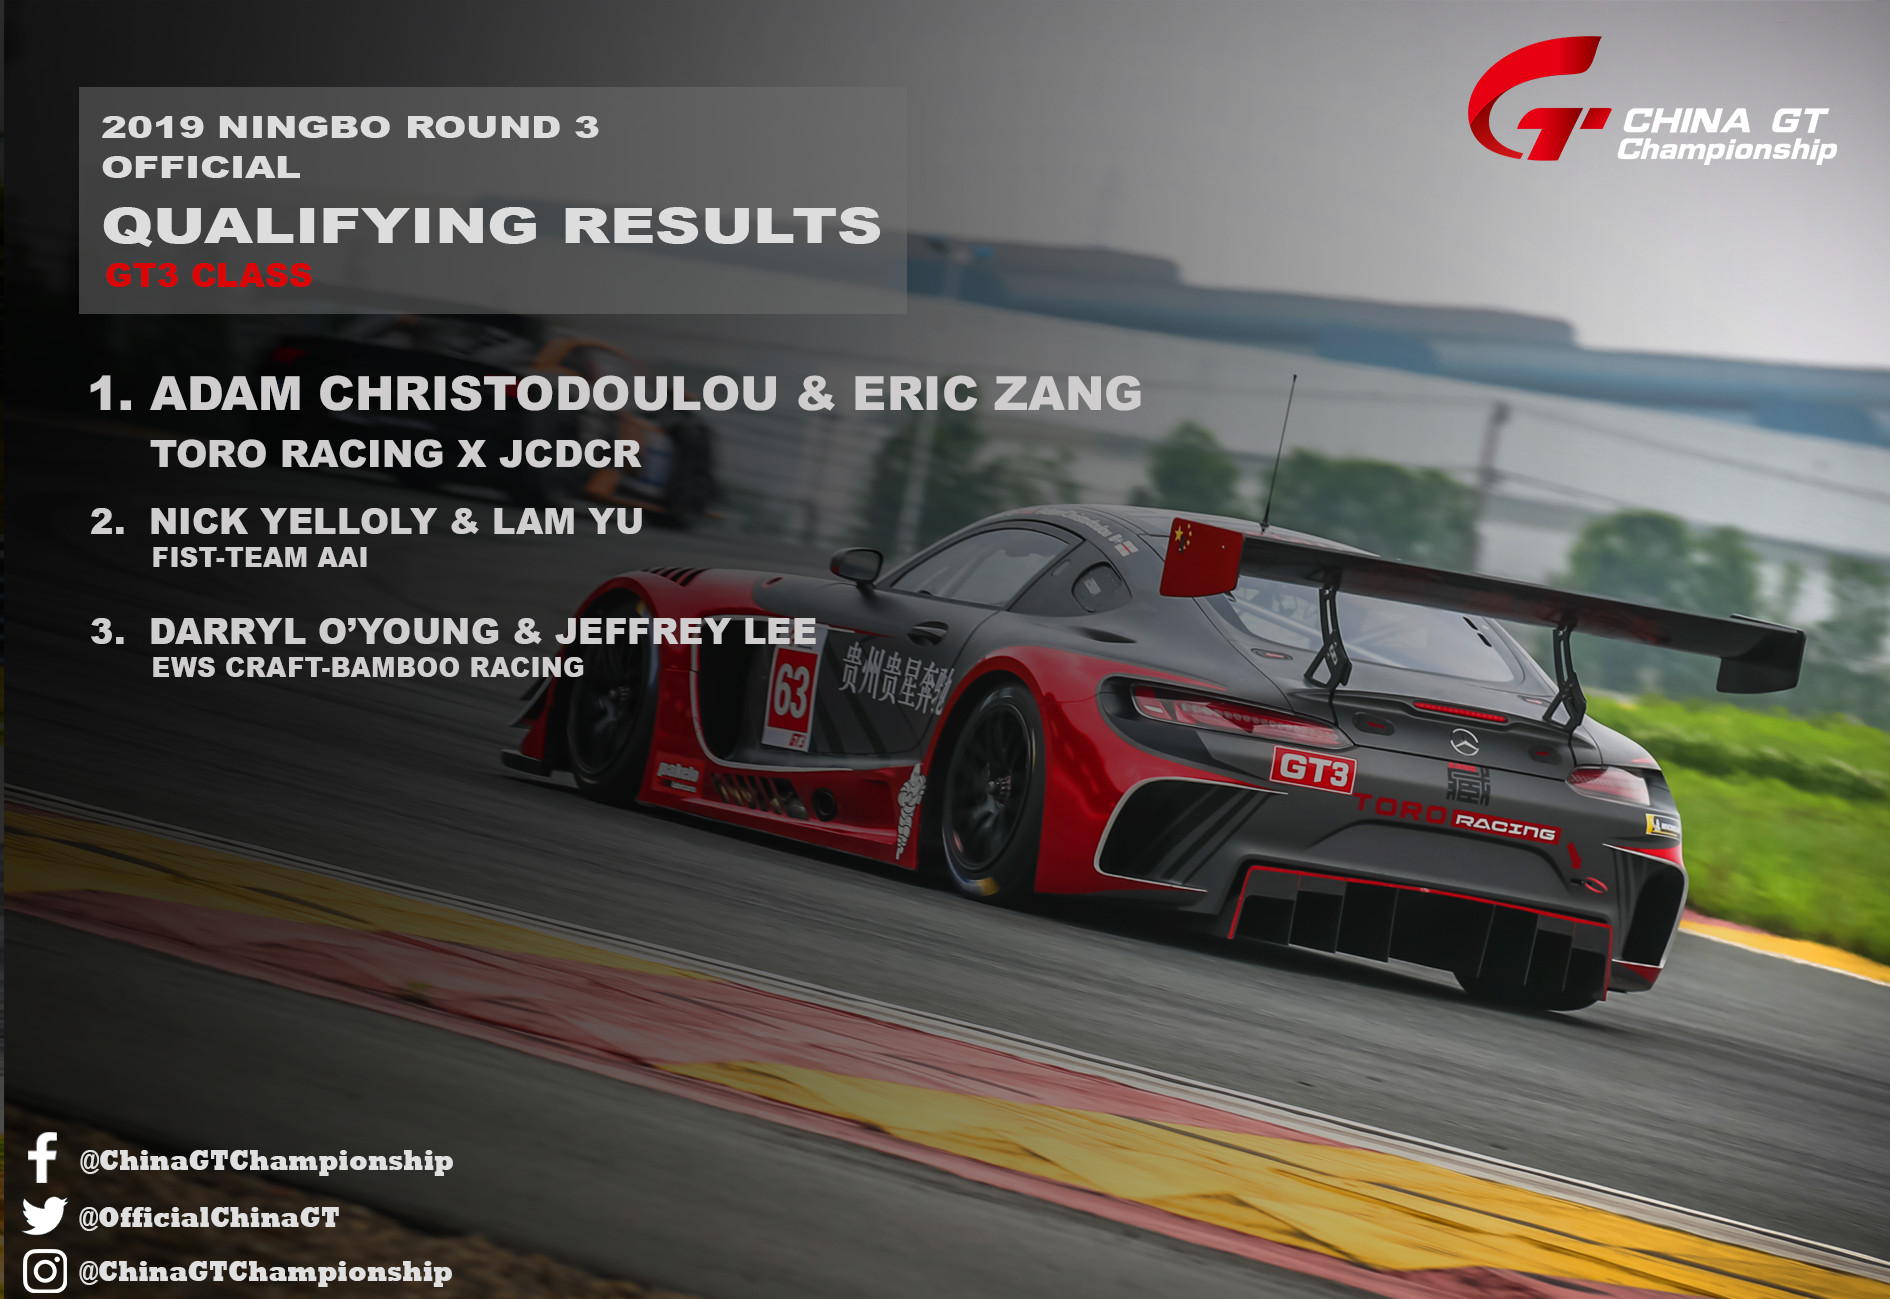 2019 China GT Ningbo Qualifying Report